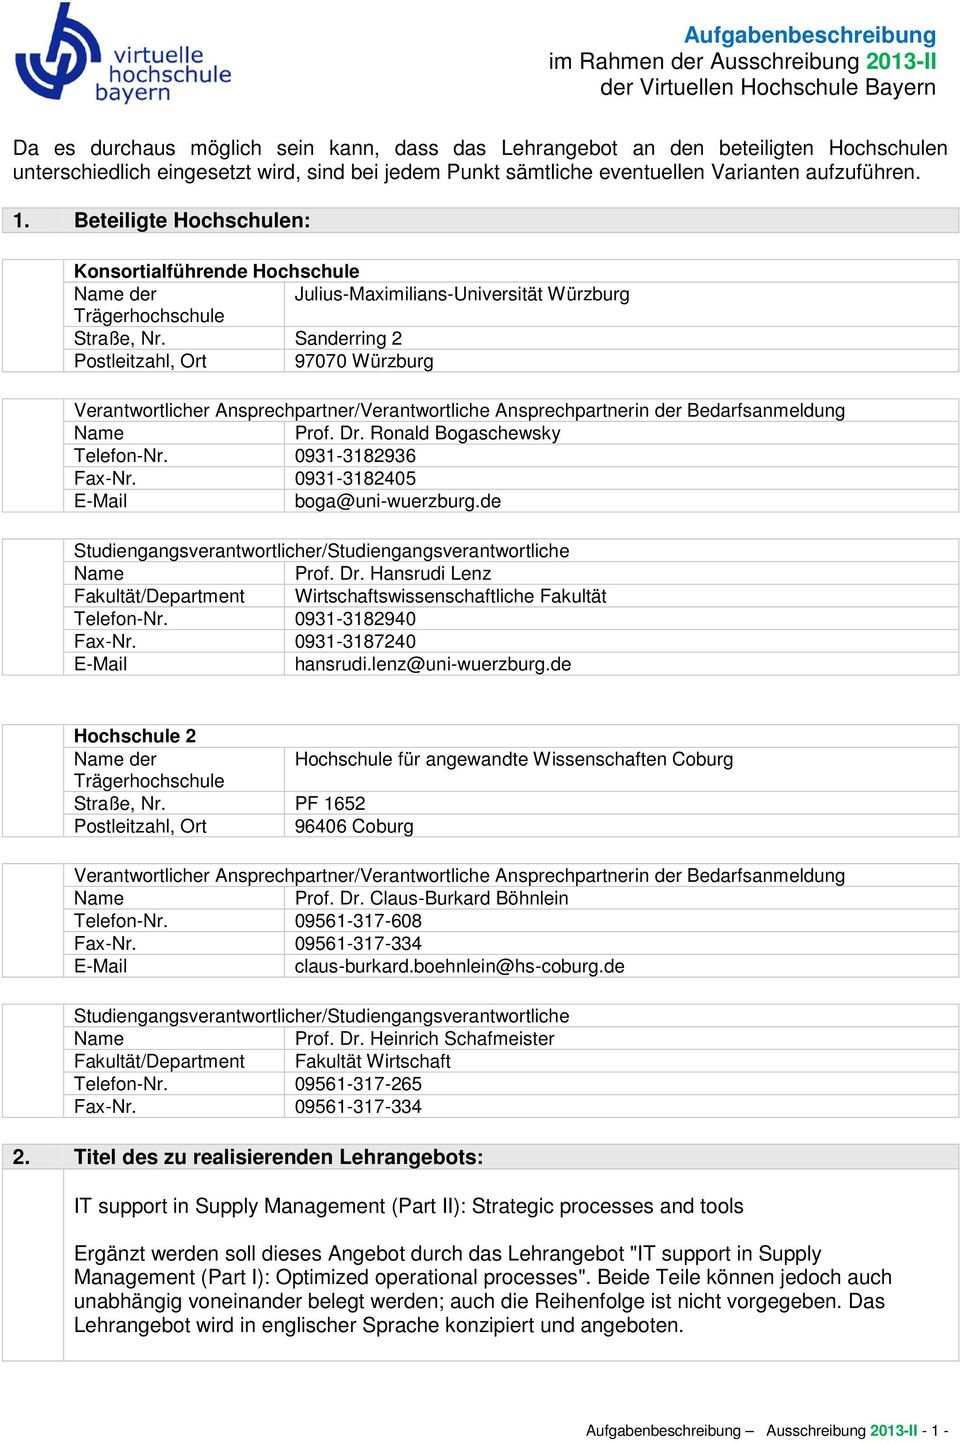 Beteiligte Hochschulen: Konsortialführende Hochschule der Julius-Maximilians-Universität Würzburg Trägerhochschule Straße, Nr.